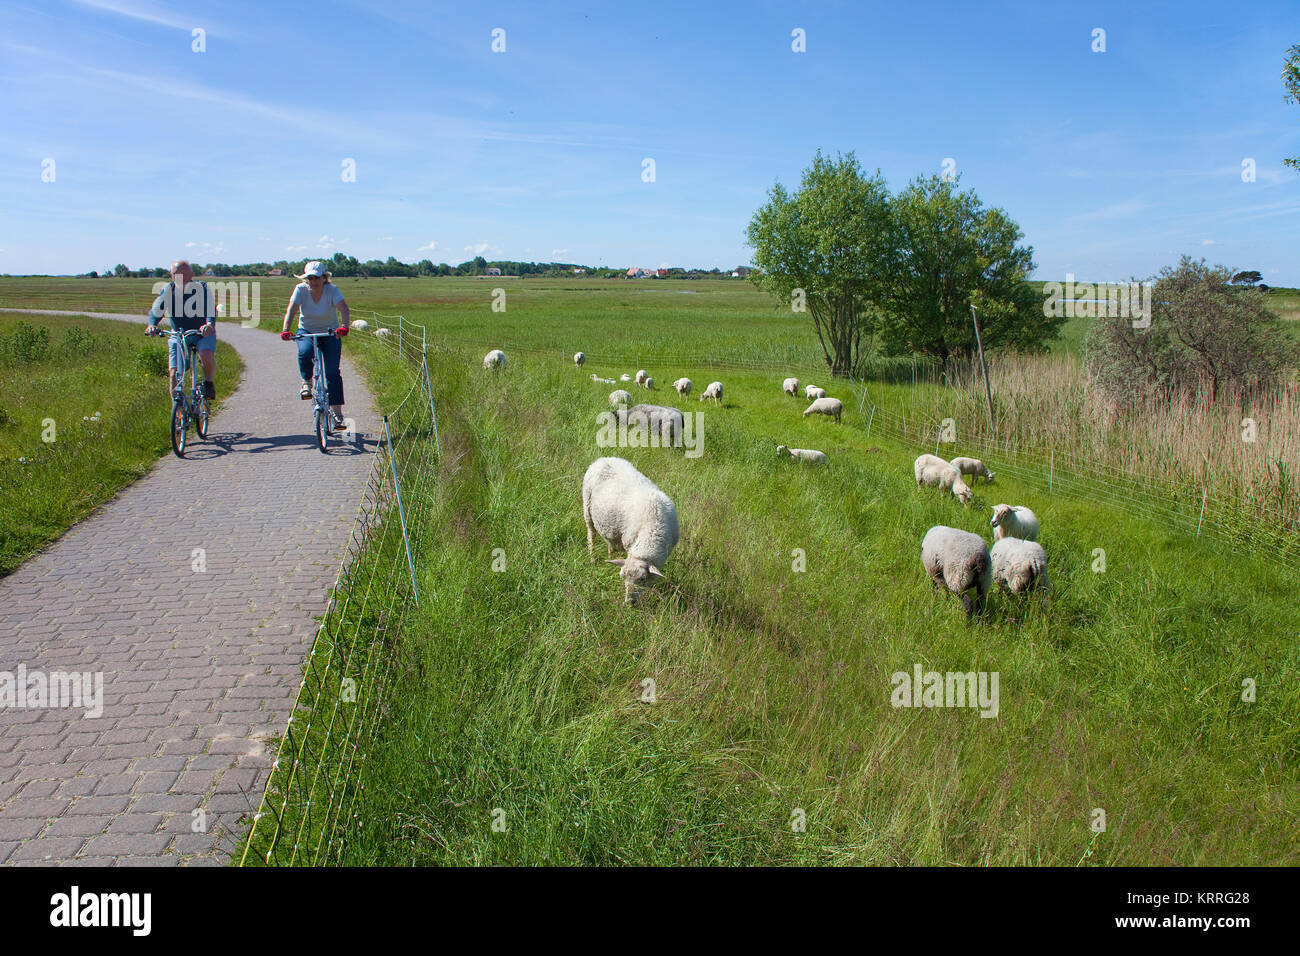 Les cyclistes passant moutons sur champ, près du village, l'île de Hiddensee Kloster, Mecklembourg-Poméranie-Occidentale, de la mer Baltique, l'Allemagne, de l'Europe Banque D'Images